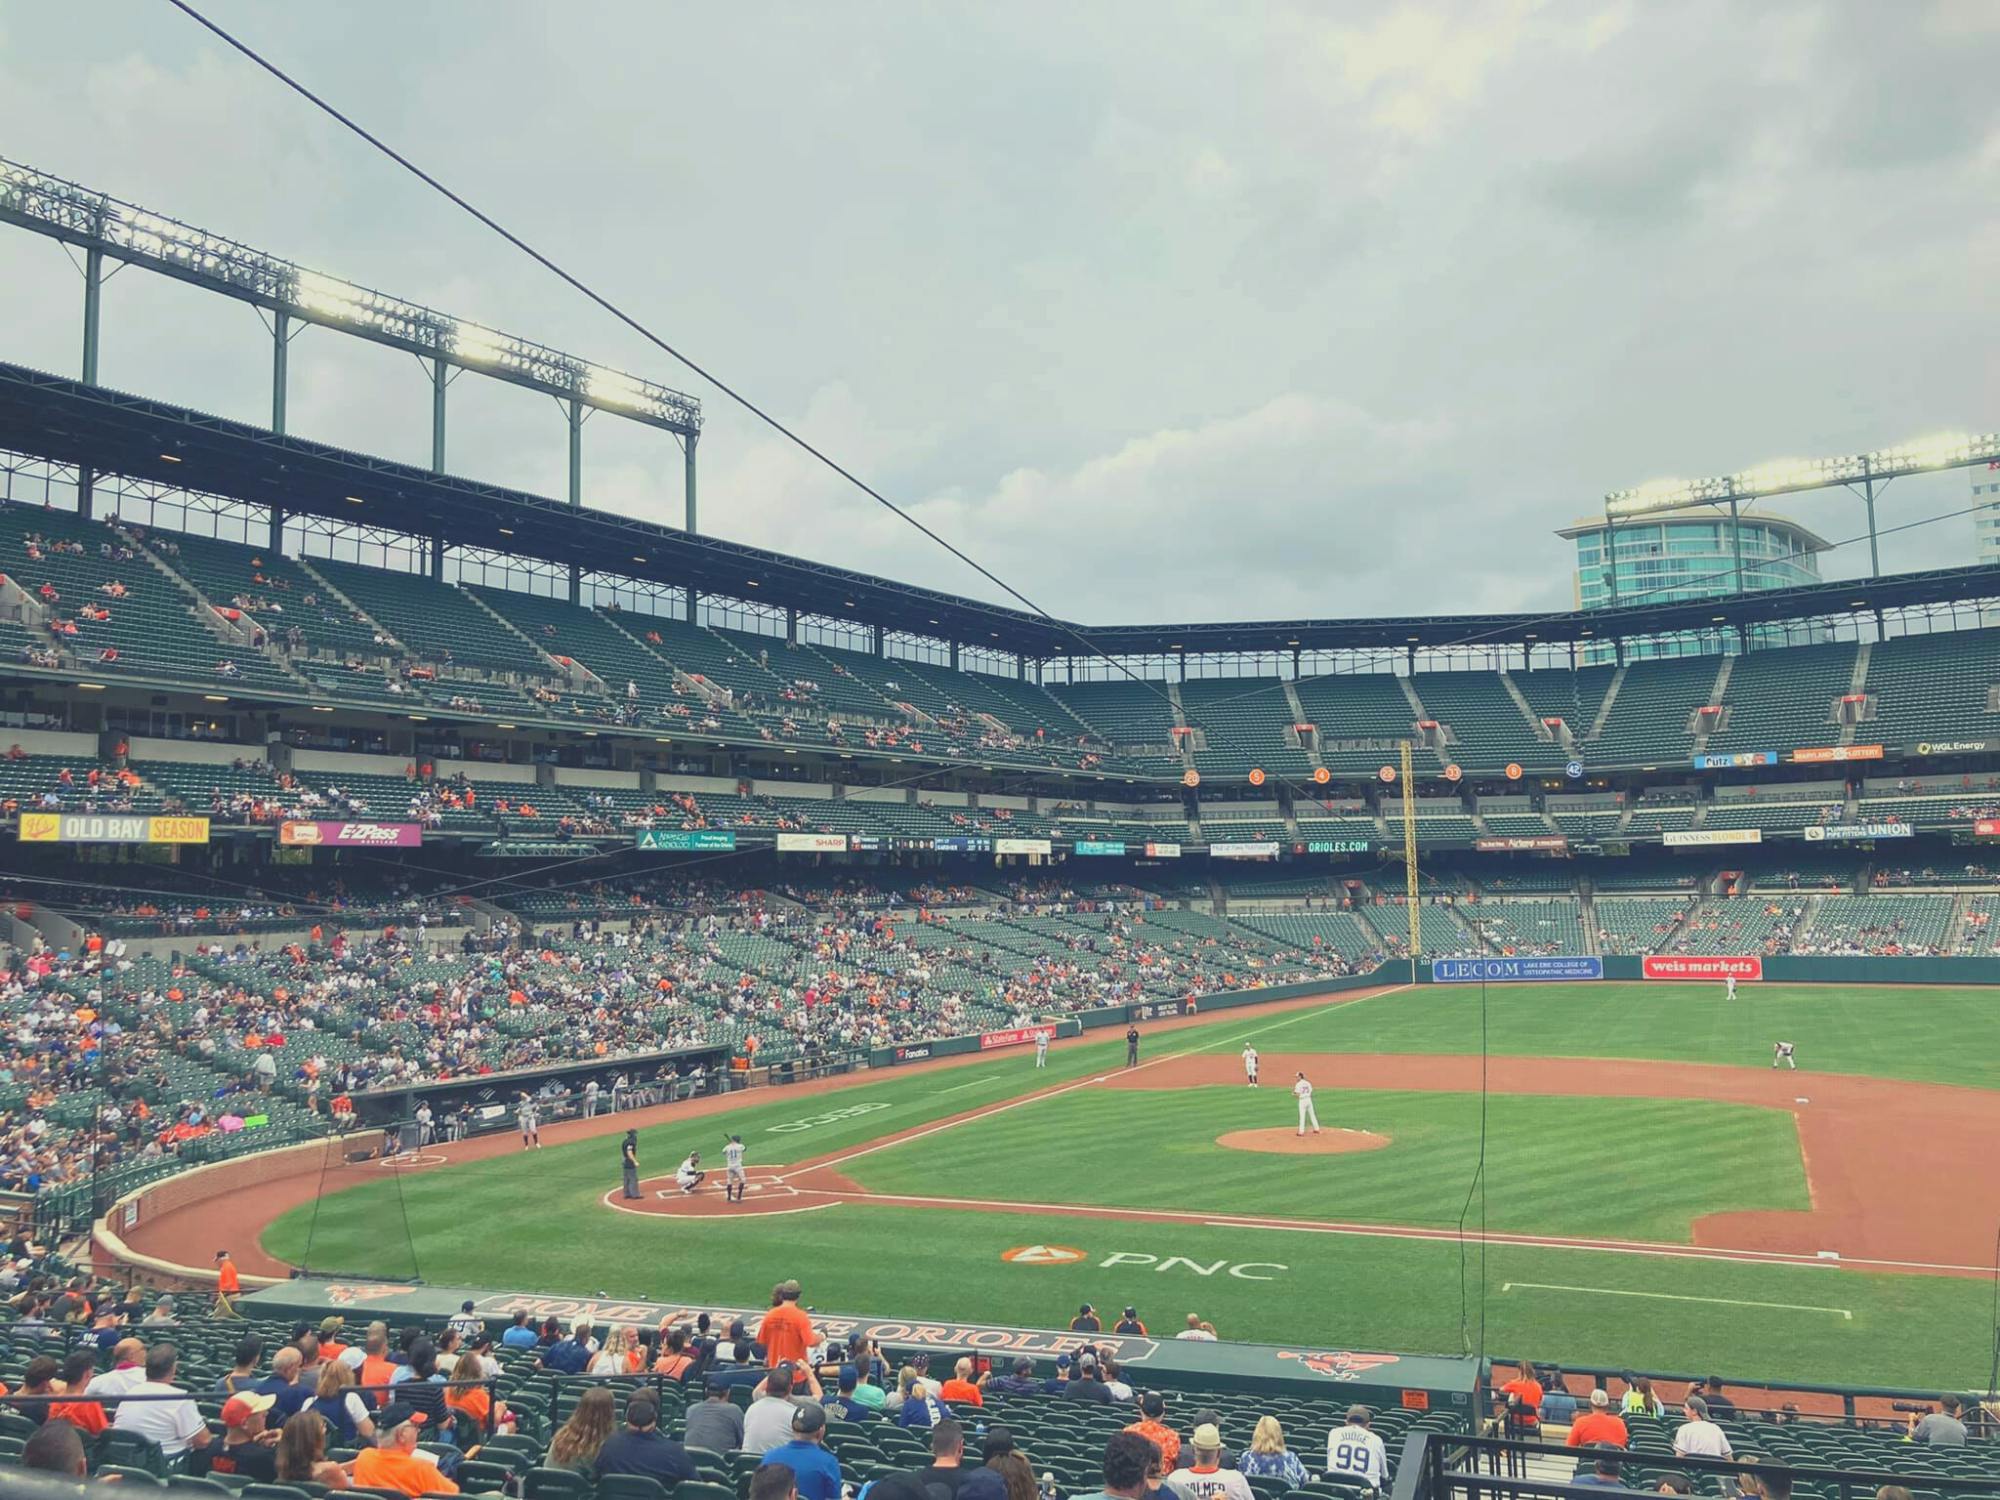 Bilety na mecz baseballowy Baltimore Orioles w Oriole Park